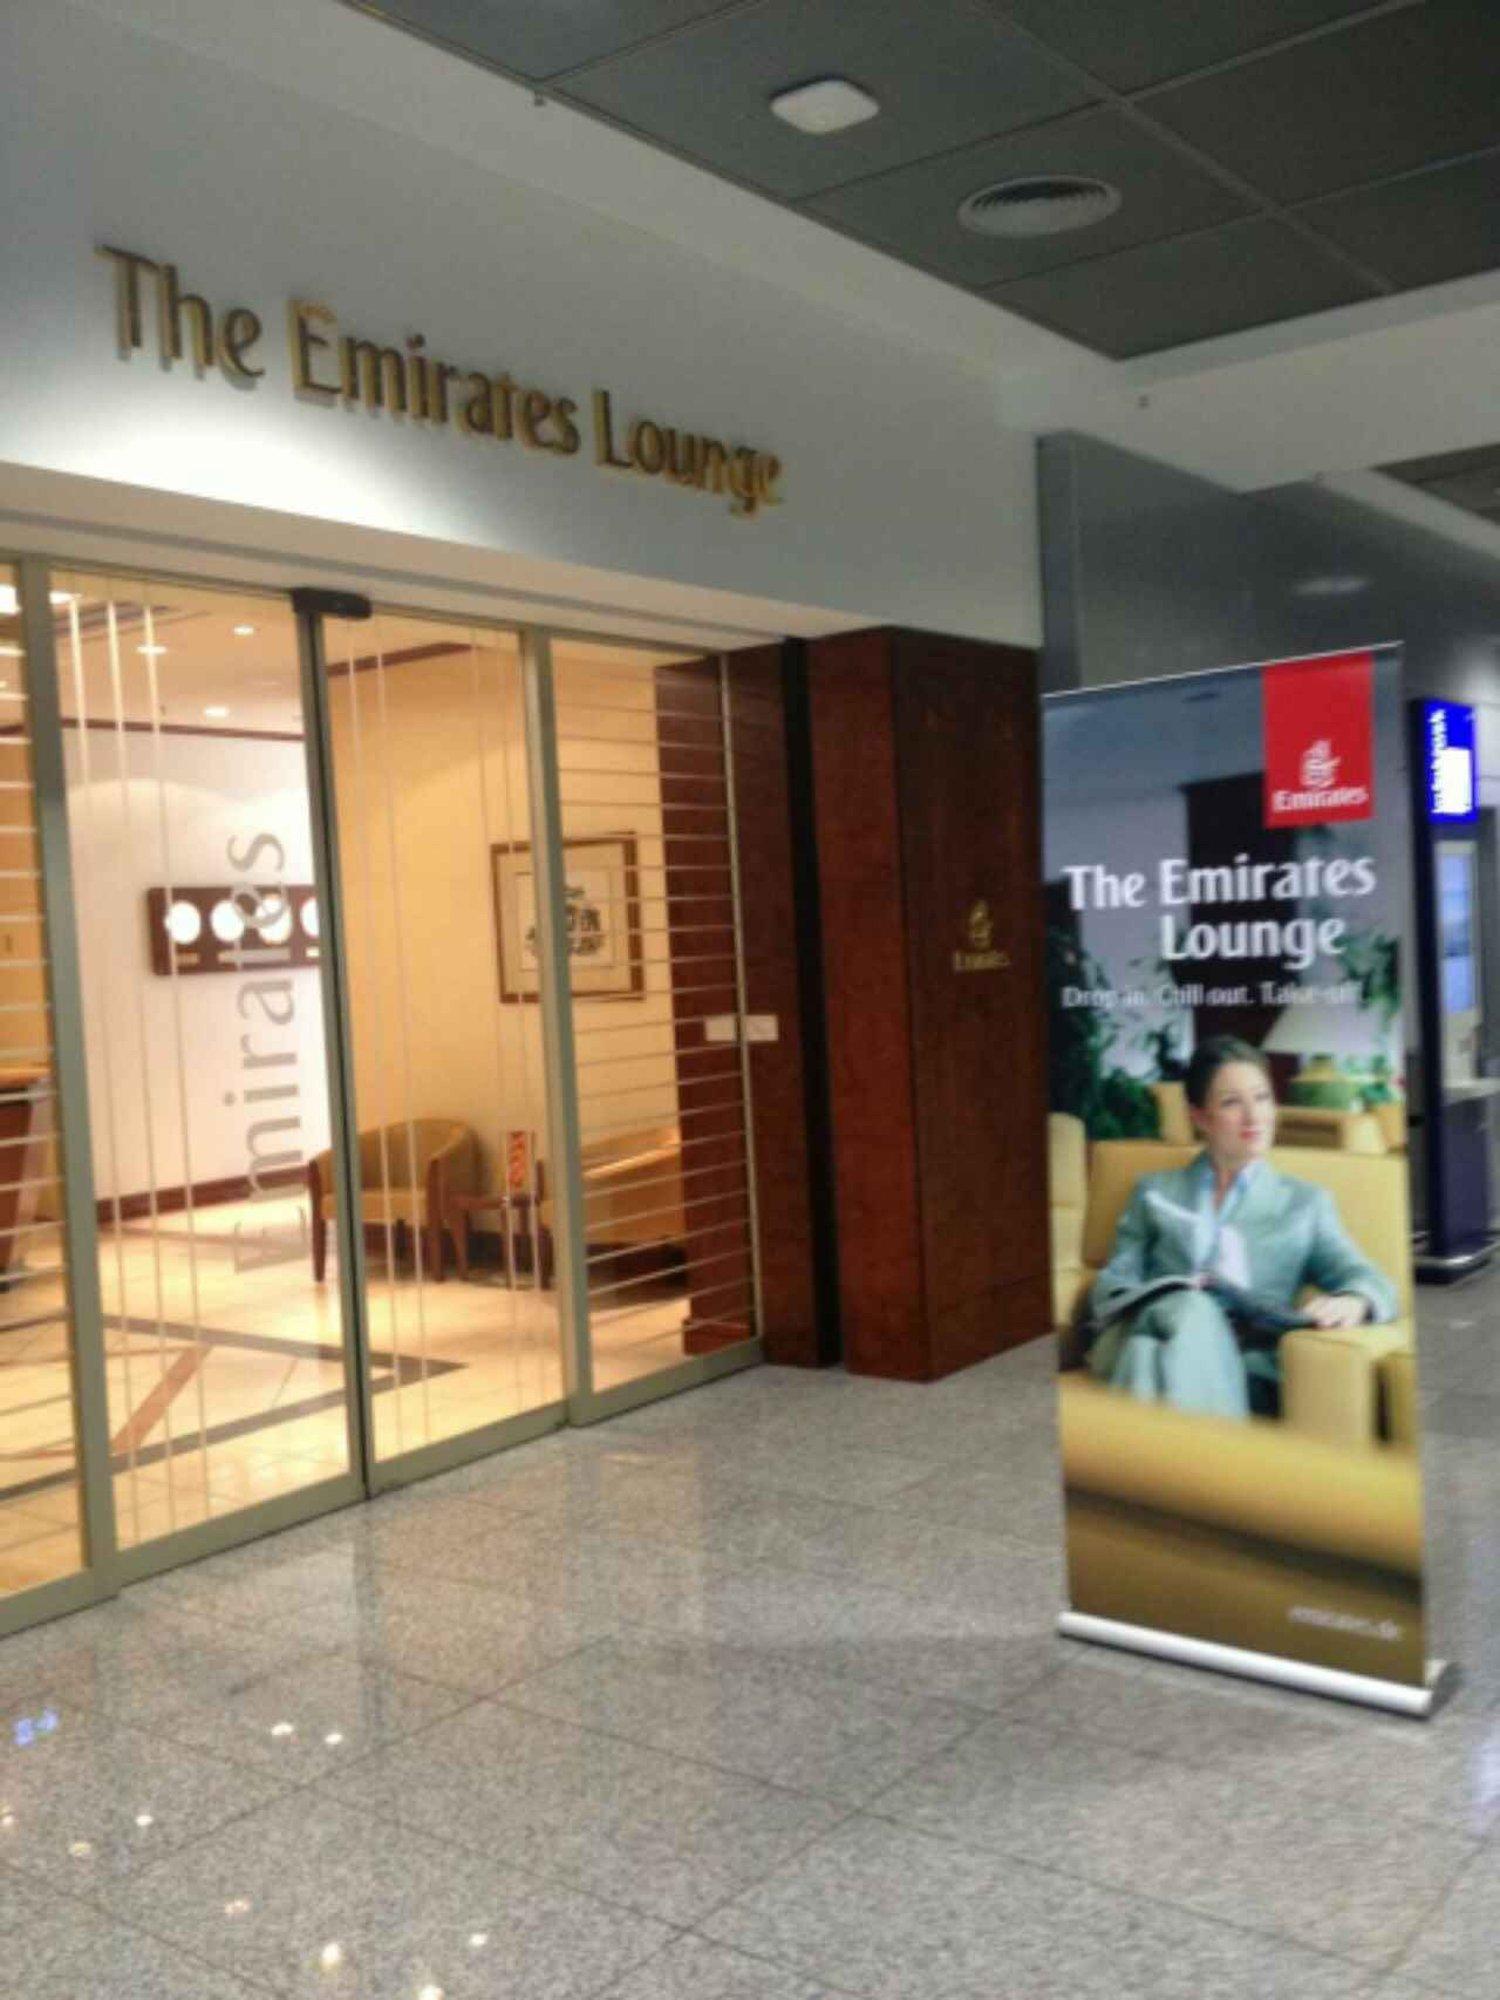 The Emirates Lounge image 8 of 8